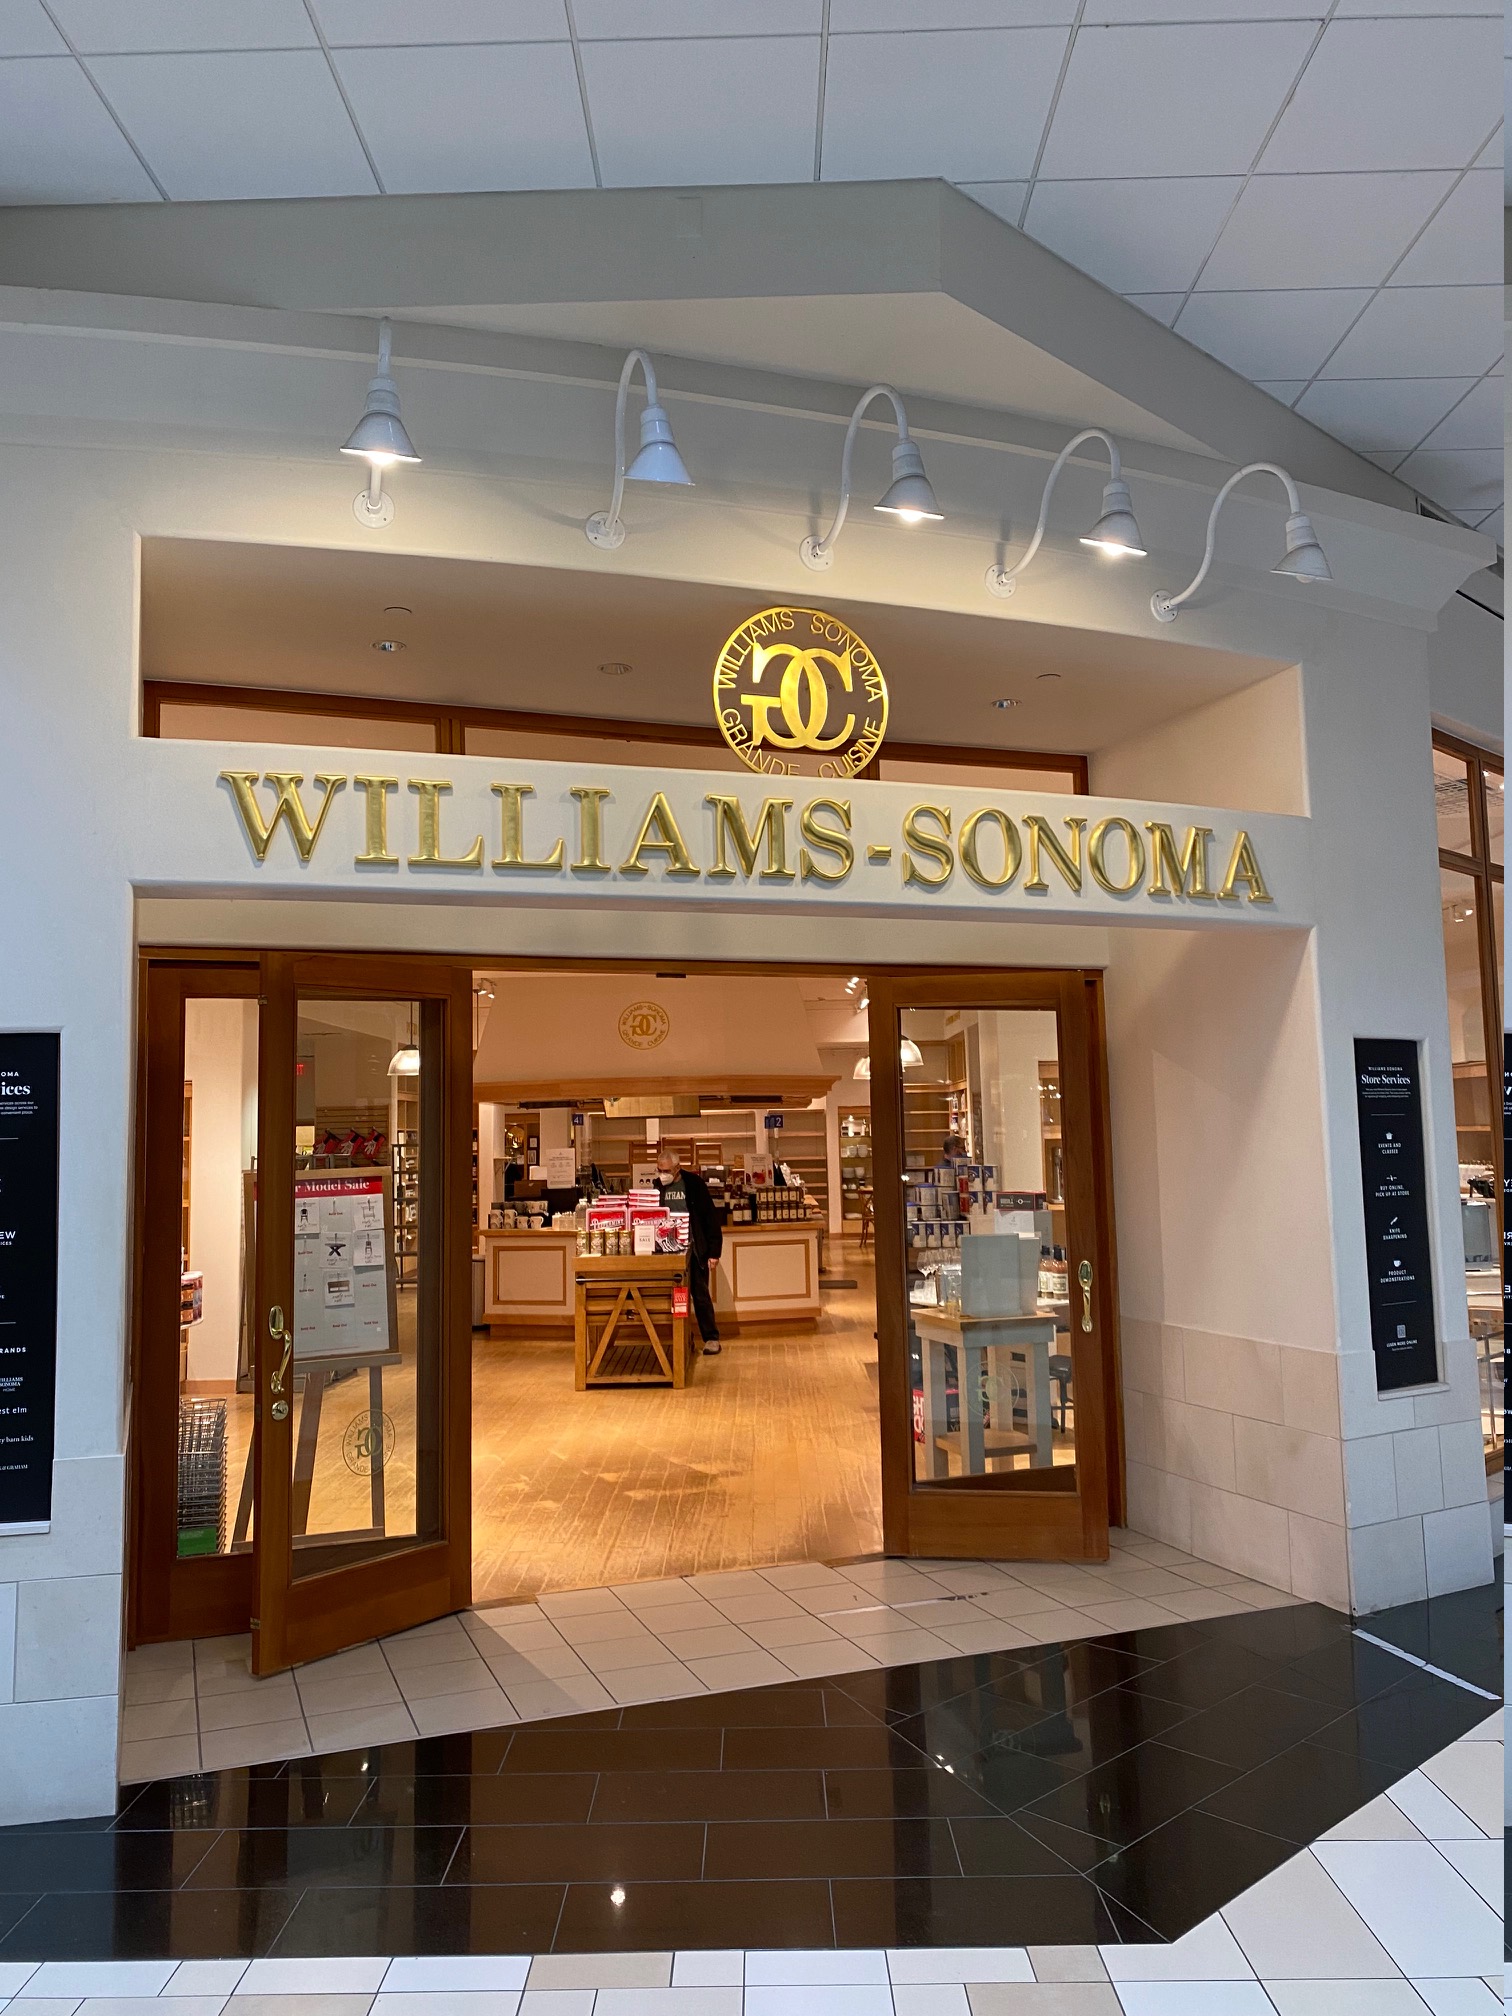 WilliamsSonoma closing in Crossgates Mall